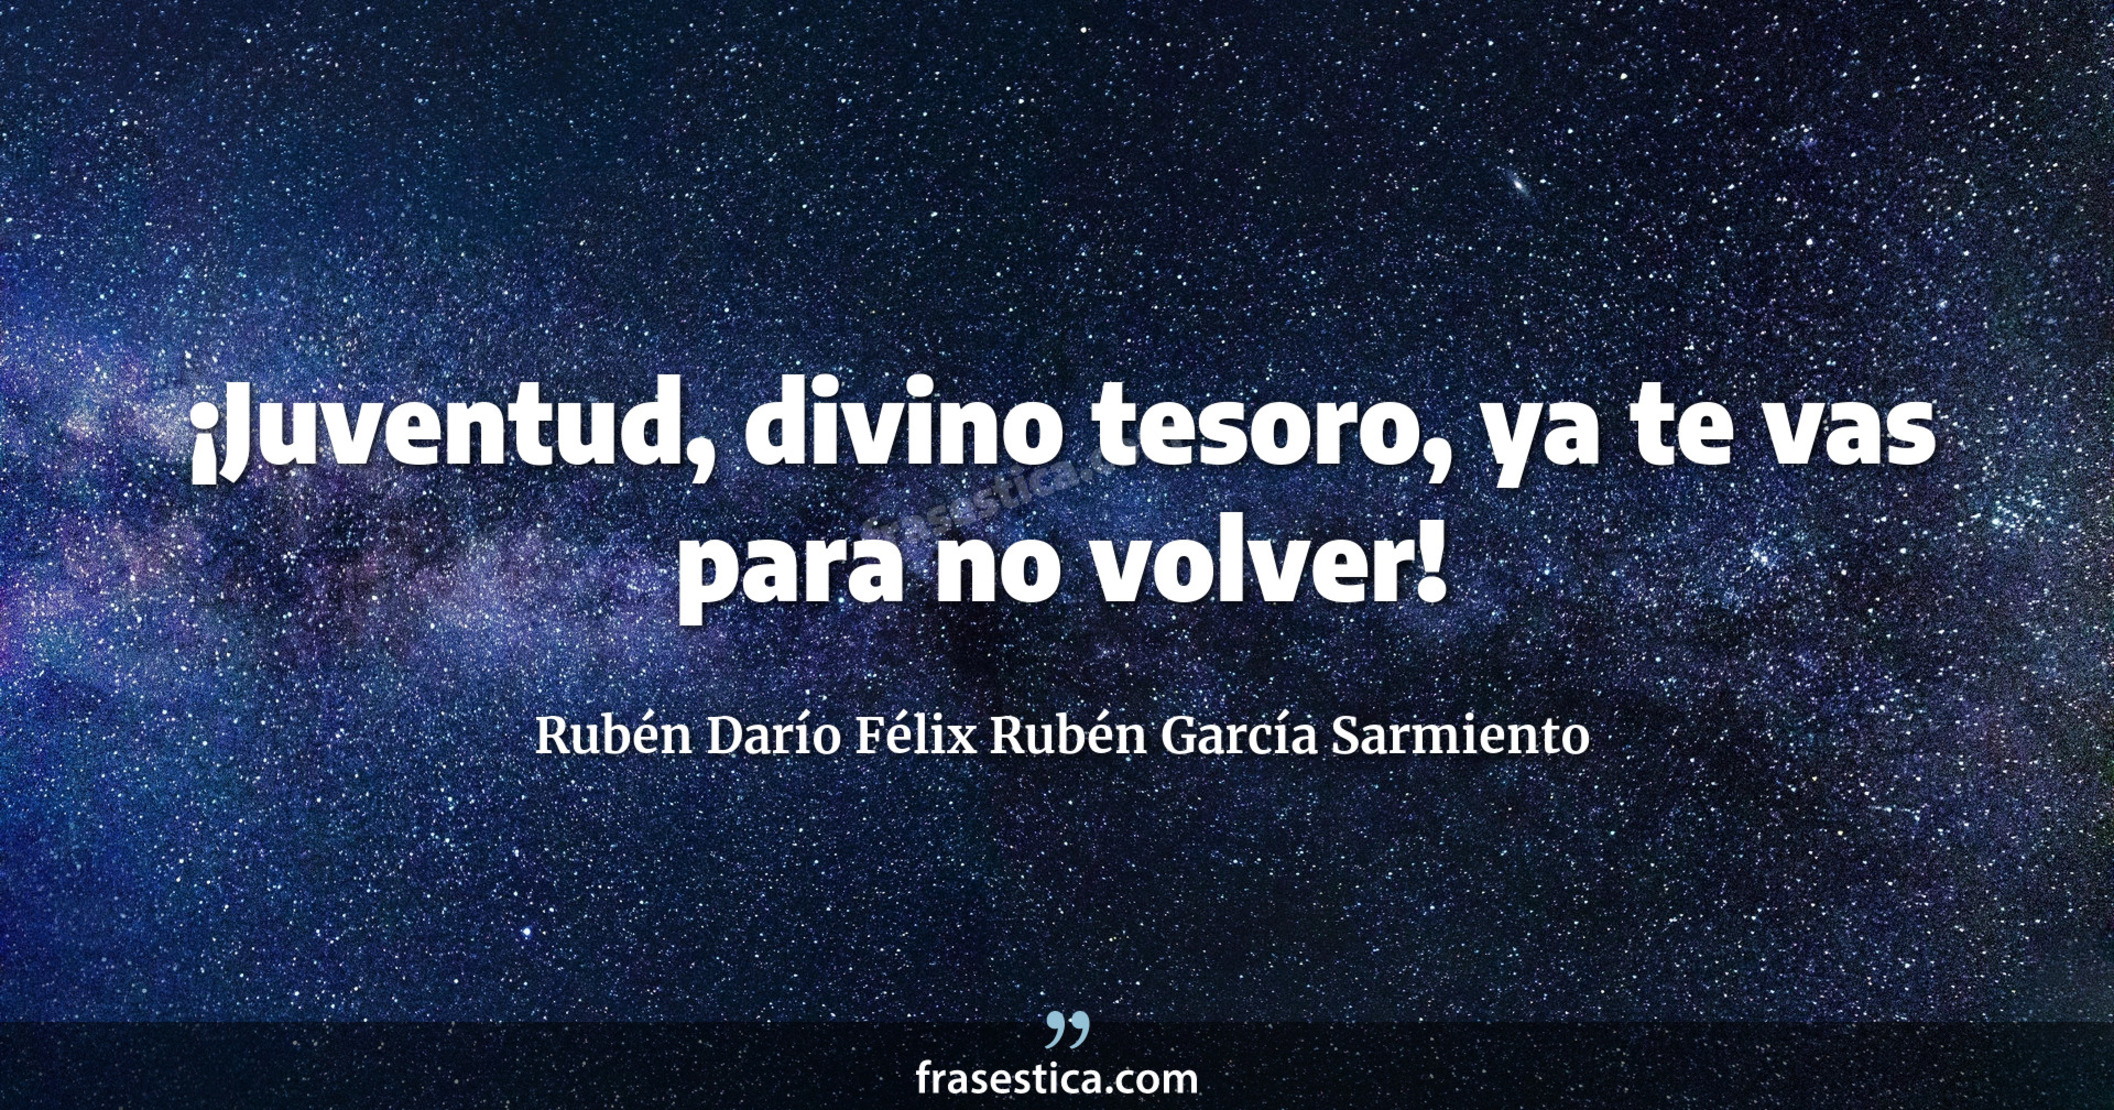 ¡Juventud, divino tesoro, ya te vas para no volver! - Rubén Darío Félix Rubén García Sarmiento